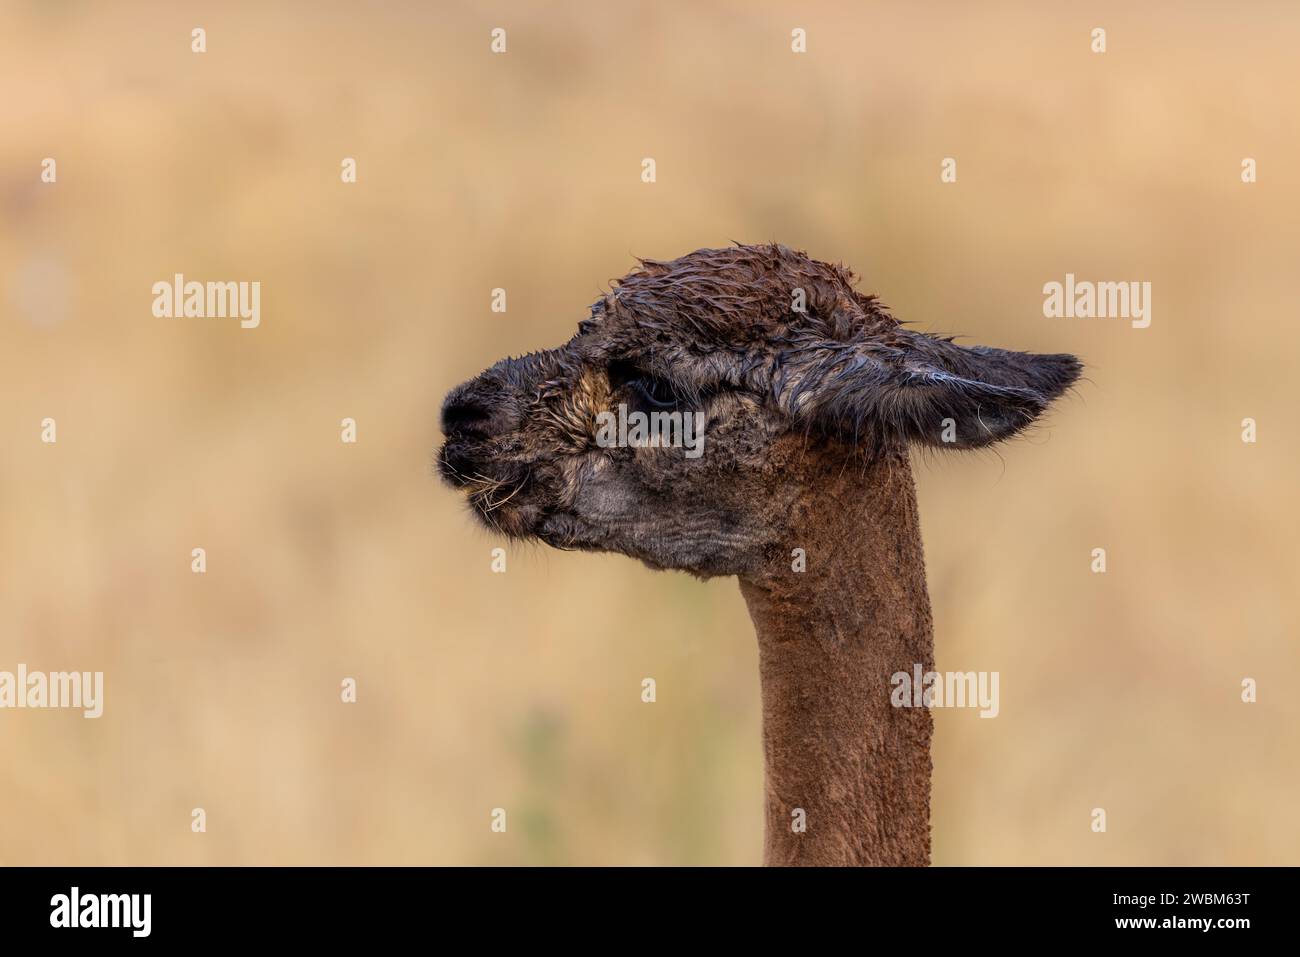 Primo piano di un lama marrone, lama Glama, dopo una pioggia di pioggia. Vista laterale faccia espressiva. Questo animale addomesticato sudamericano è allevato per il suo sof Foto Stock